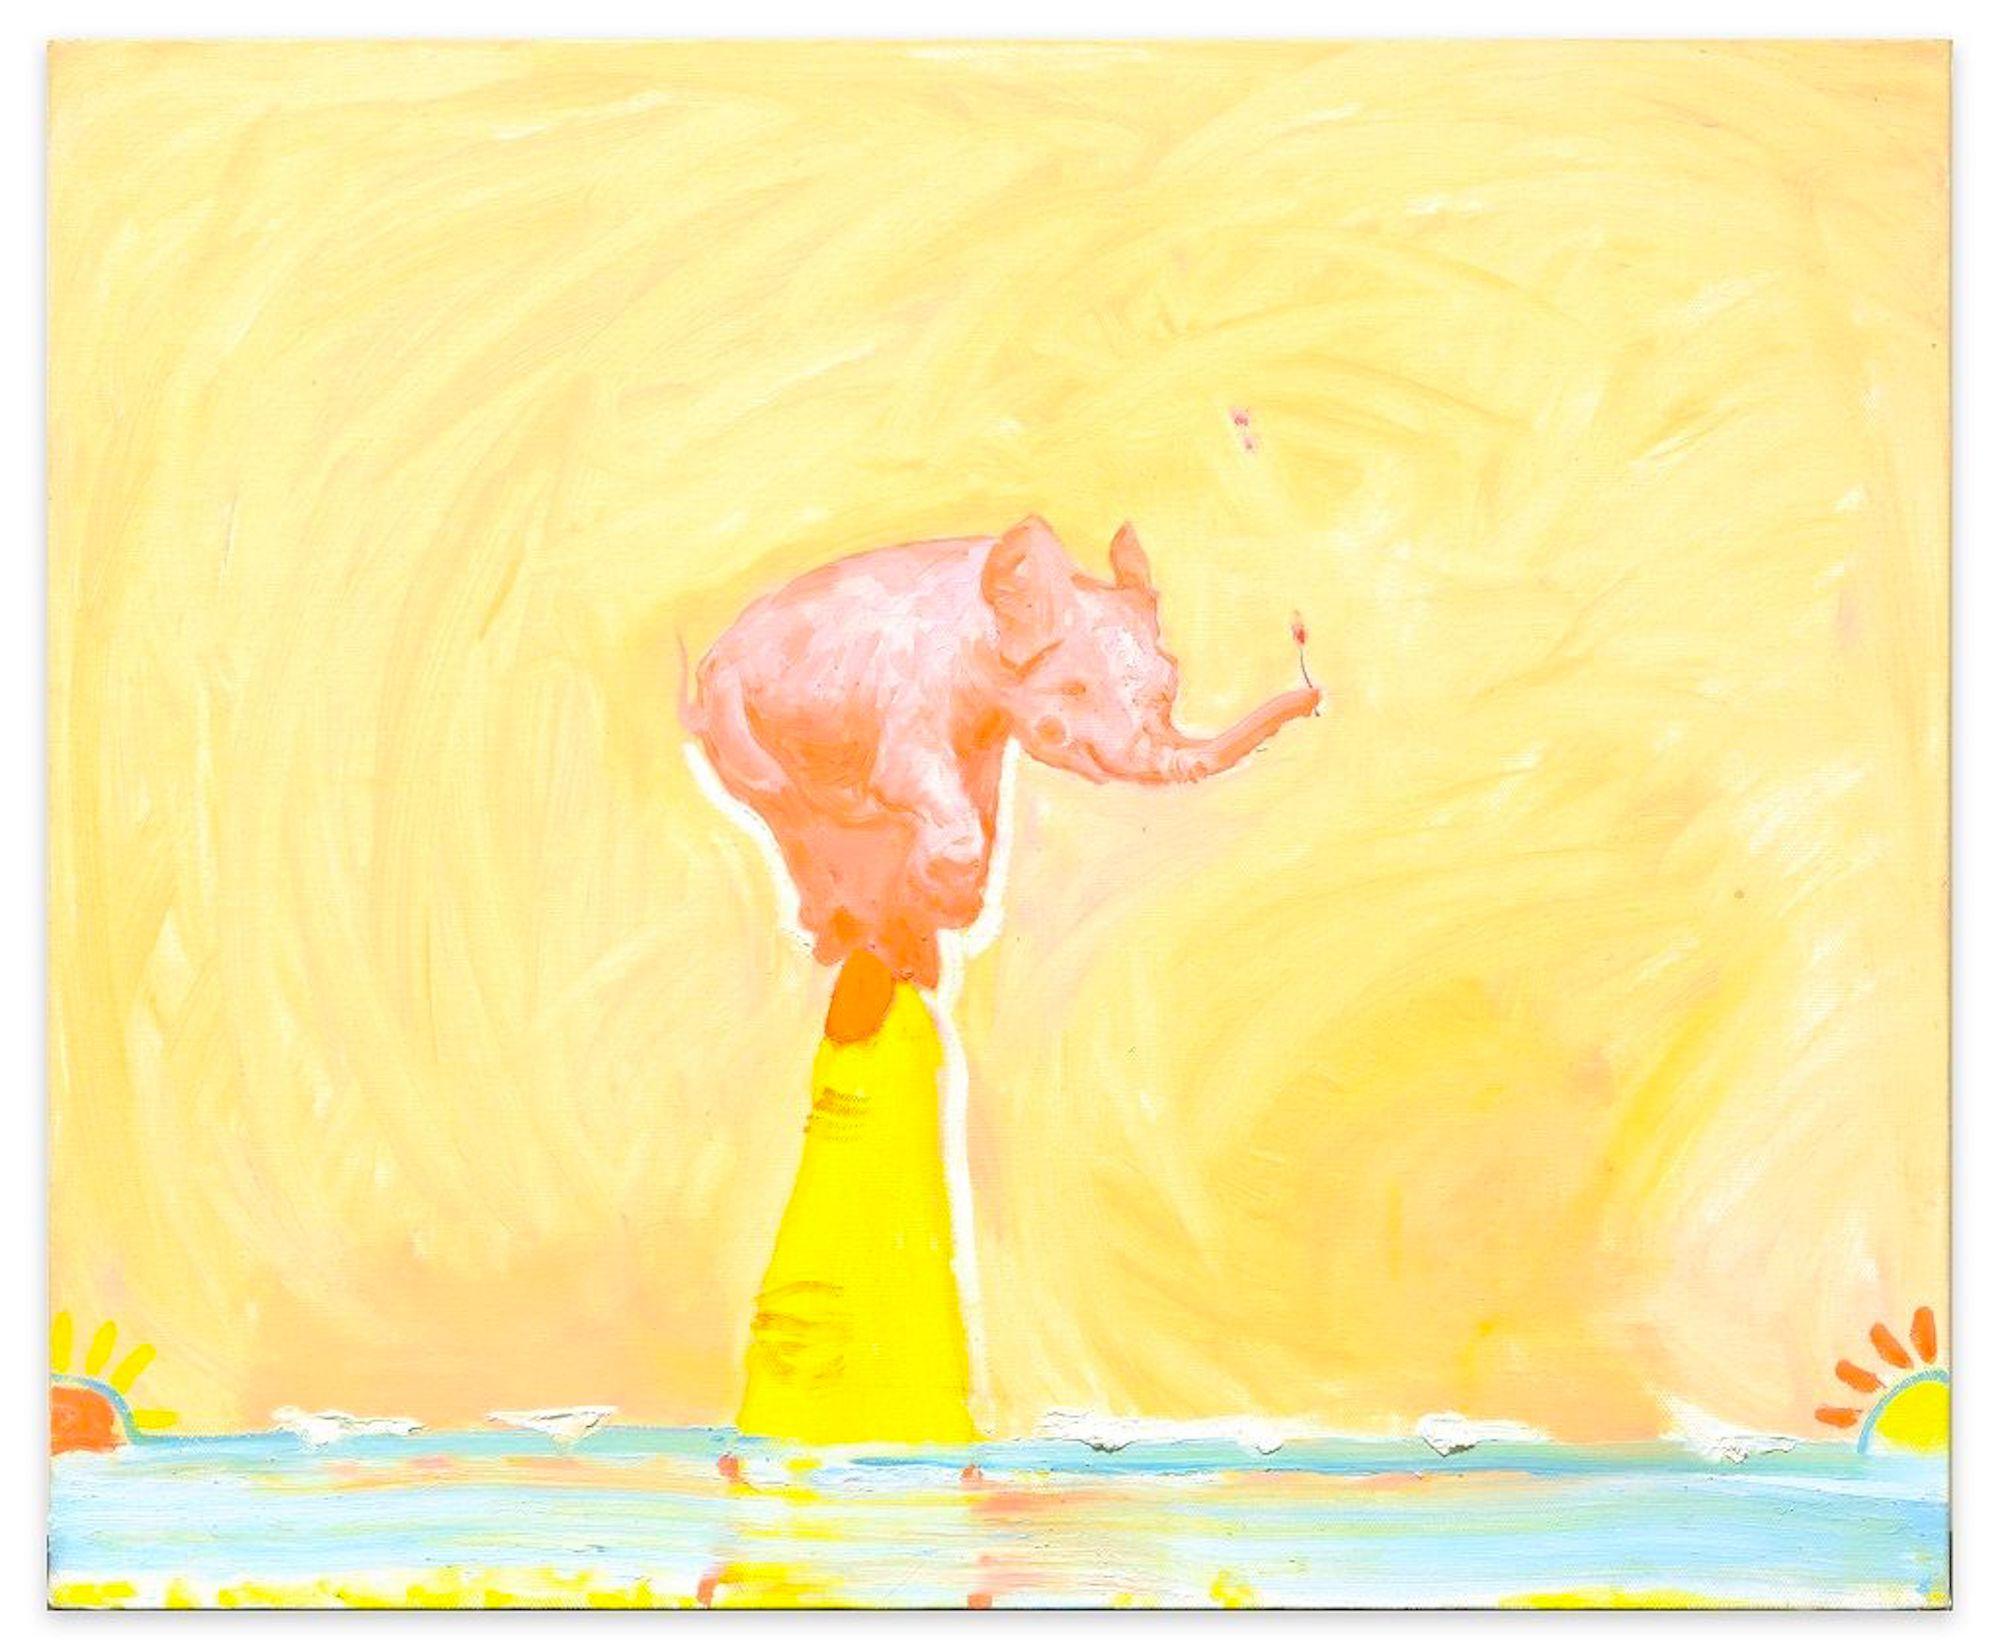 Pink Elephant ist ein Original-Ölgemälde auf Leinwand, das 2019 von der zeitgenössischen russischen Künstlerin Anastasia Kurakina realisiert wurde.

Signiert und datiert in schwarzer Tinte auf der Rückseite.

Dieses Originalgemälde stellt mit einer